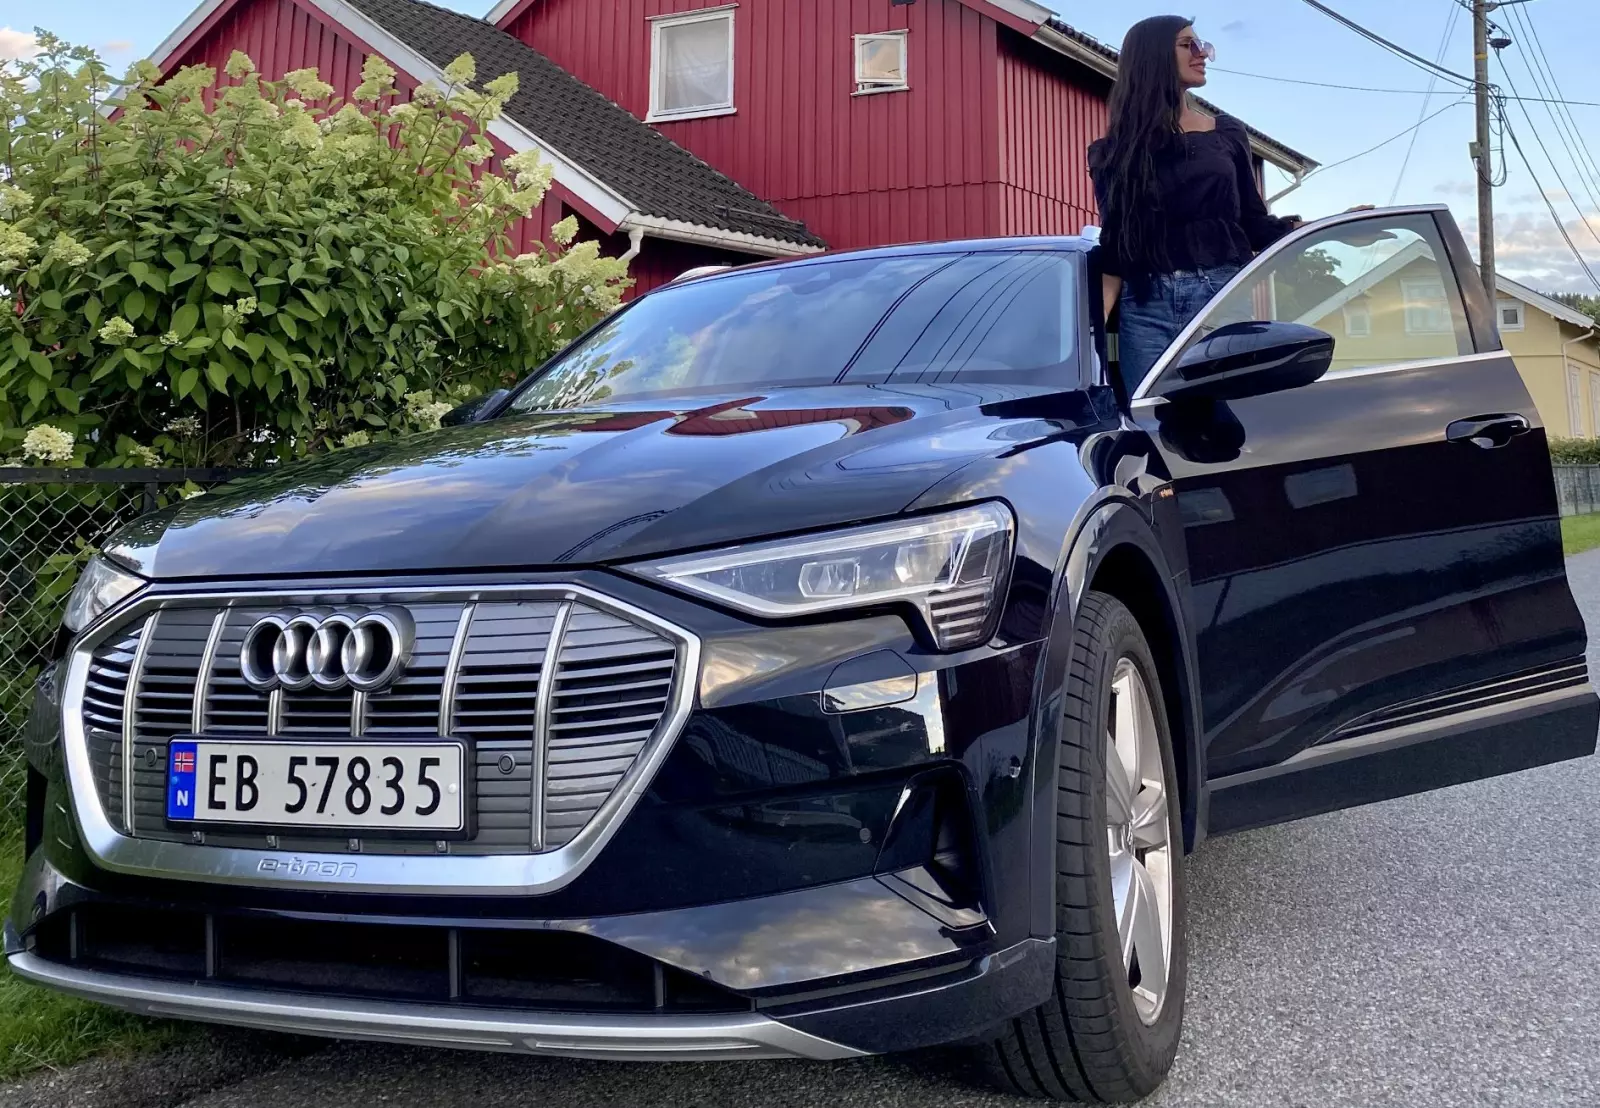 <b>NETTVENN:</b> Sundas Khan fra Bjørndal i Oslo googlet – og falt for Audi.